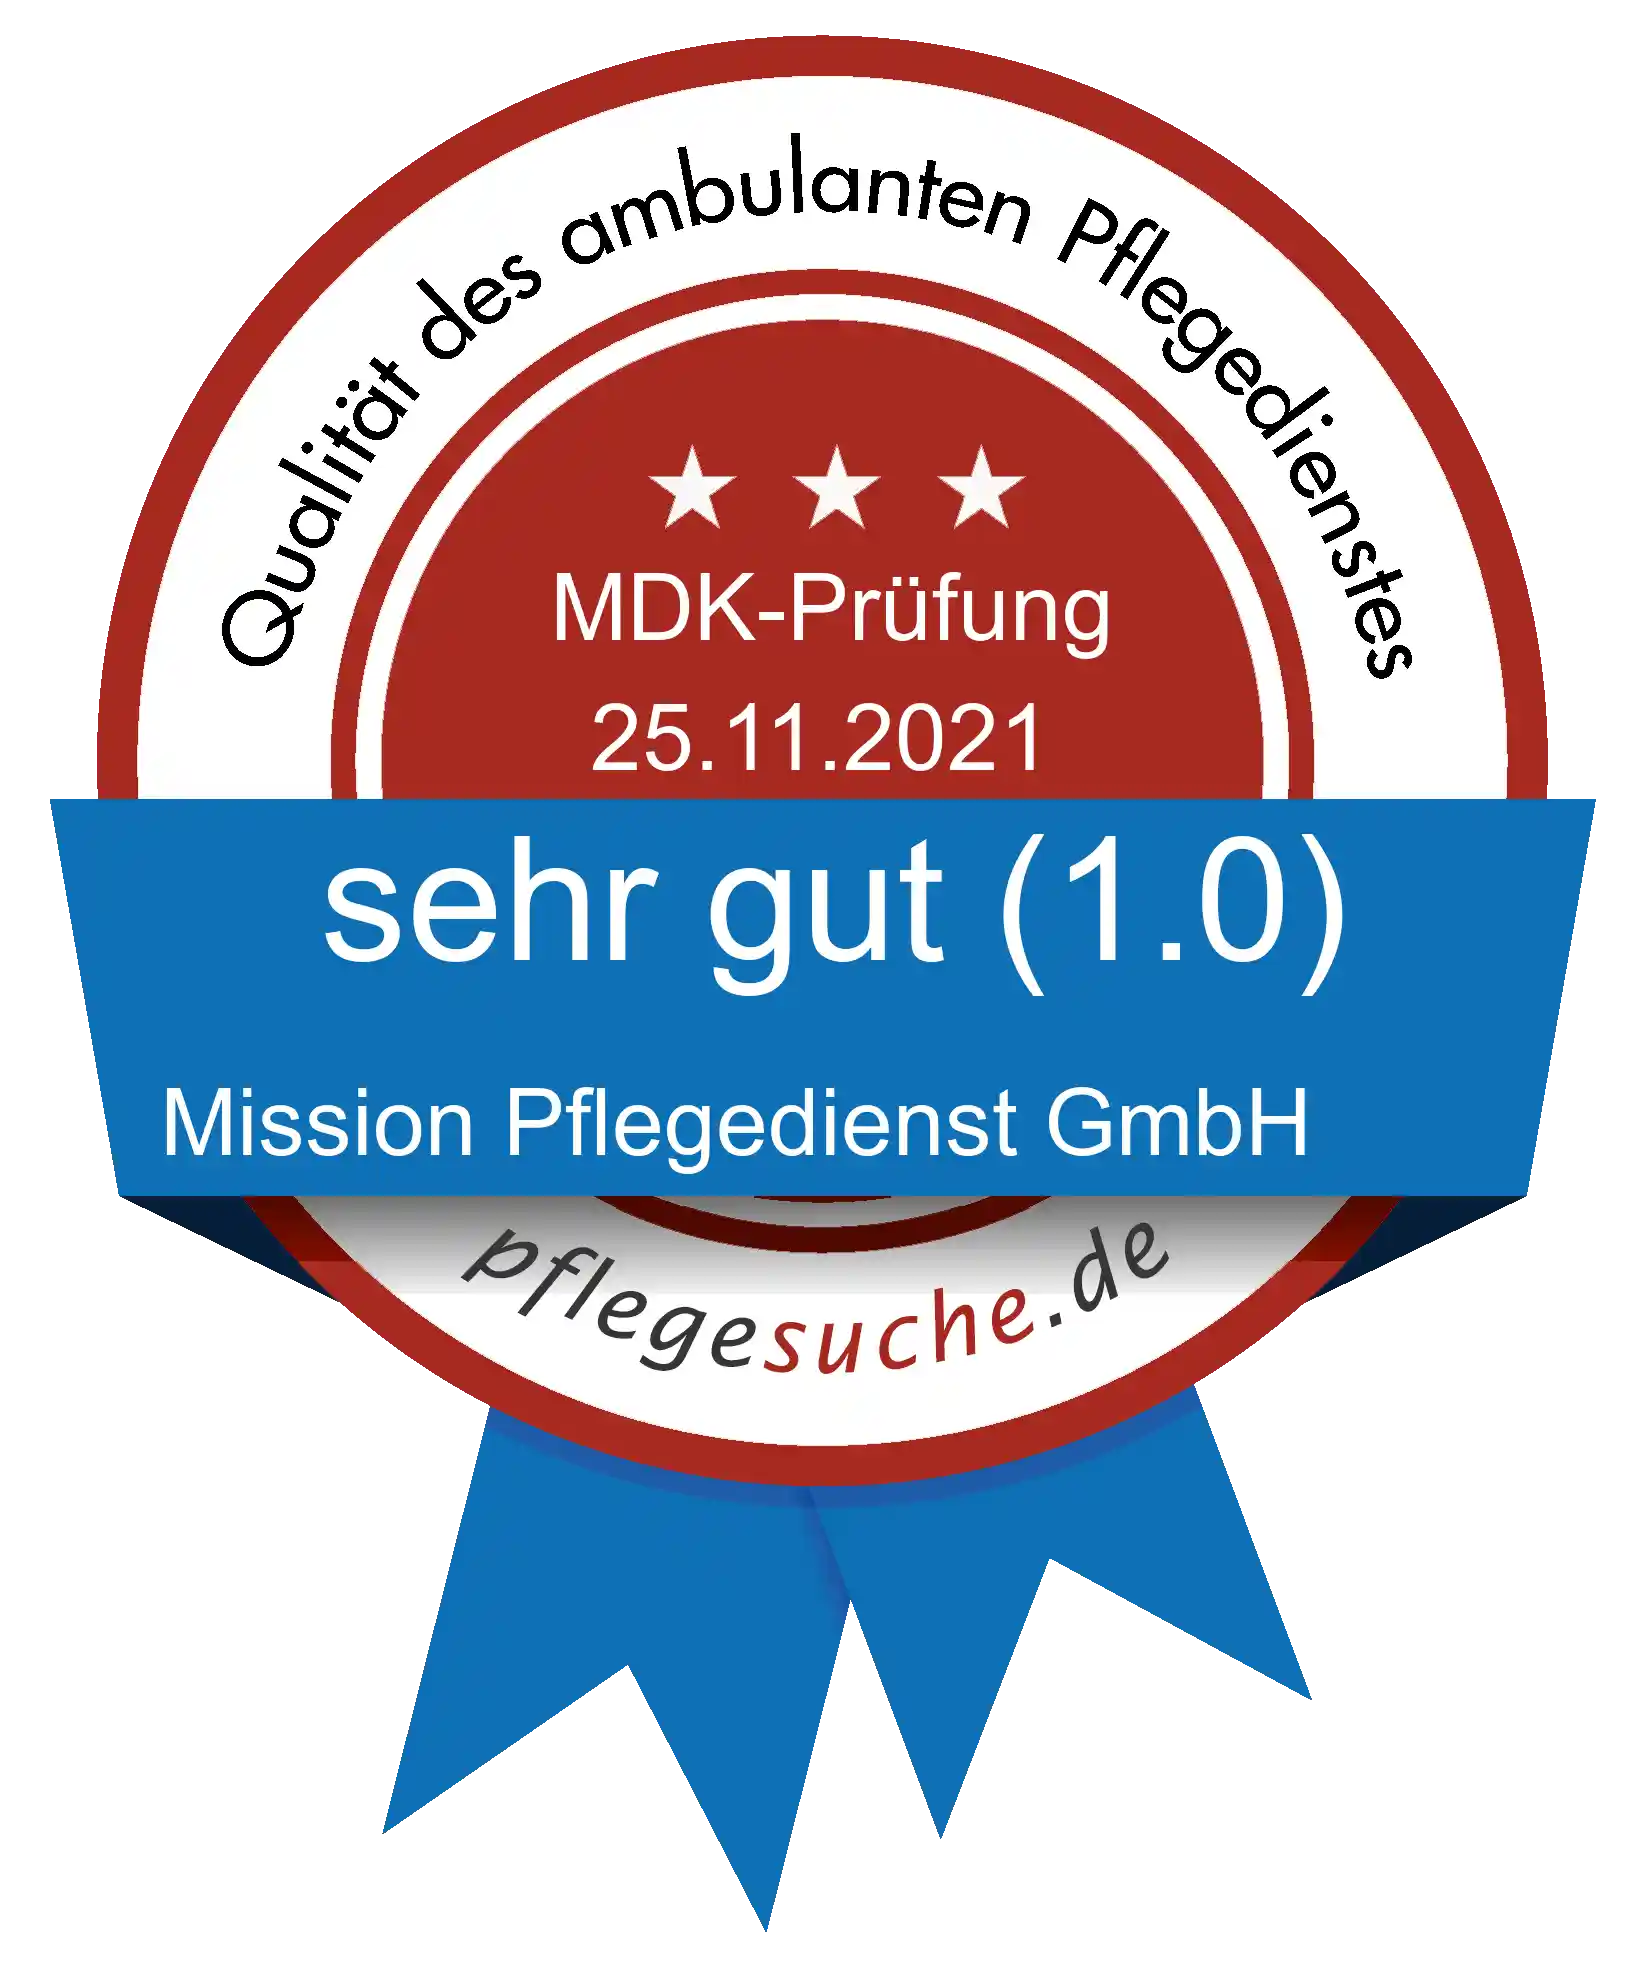 Siegel Benotung: Mission Pflegedienst GmbH